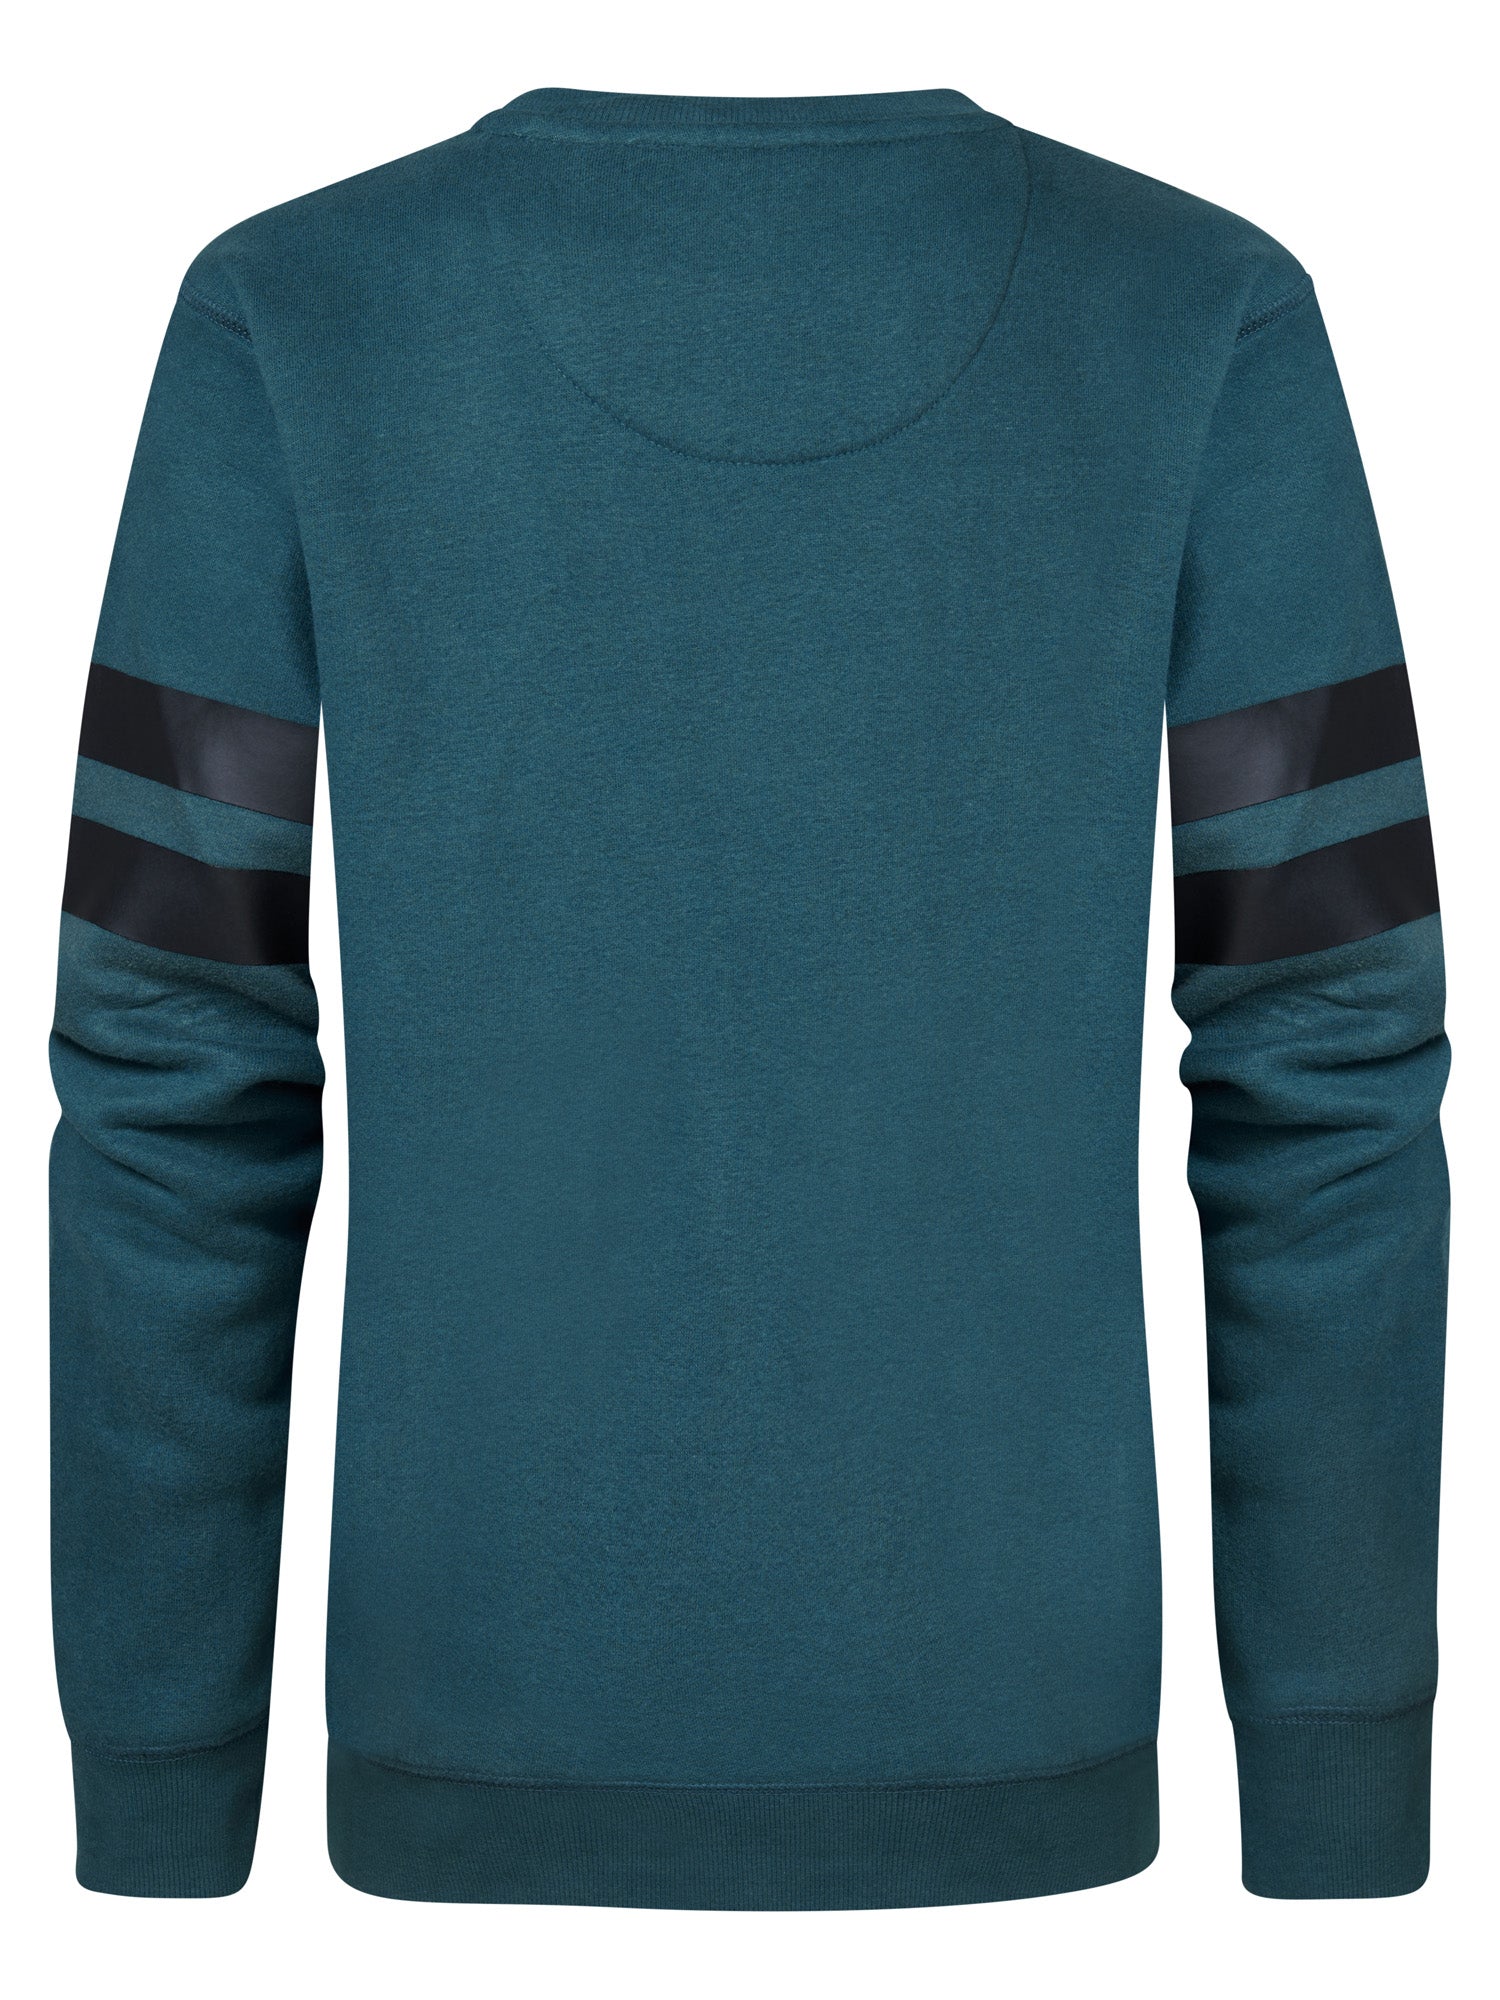 Jongens Sweater Round Neck van Petrol in de kleur Dark Cyaan in maat 164.